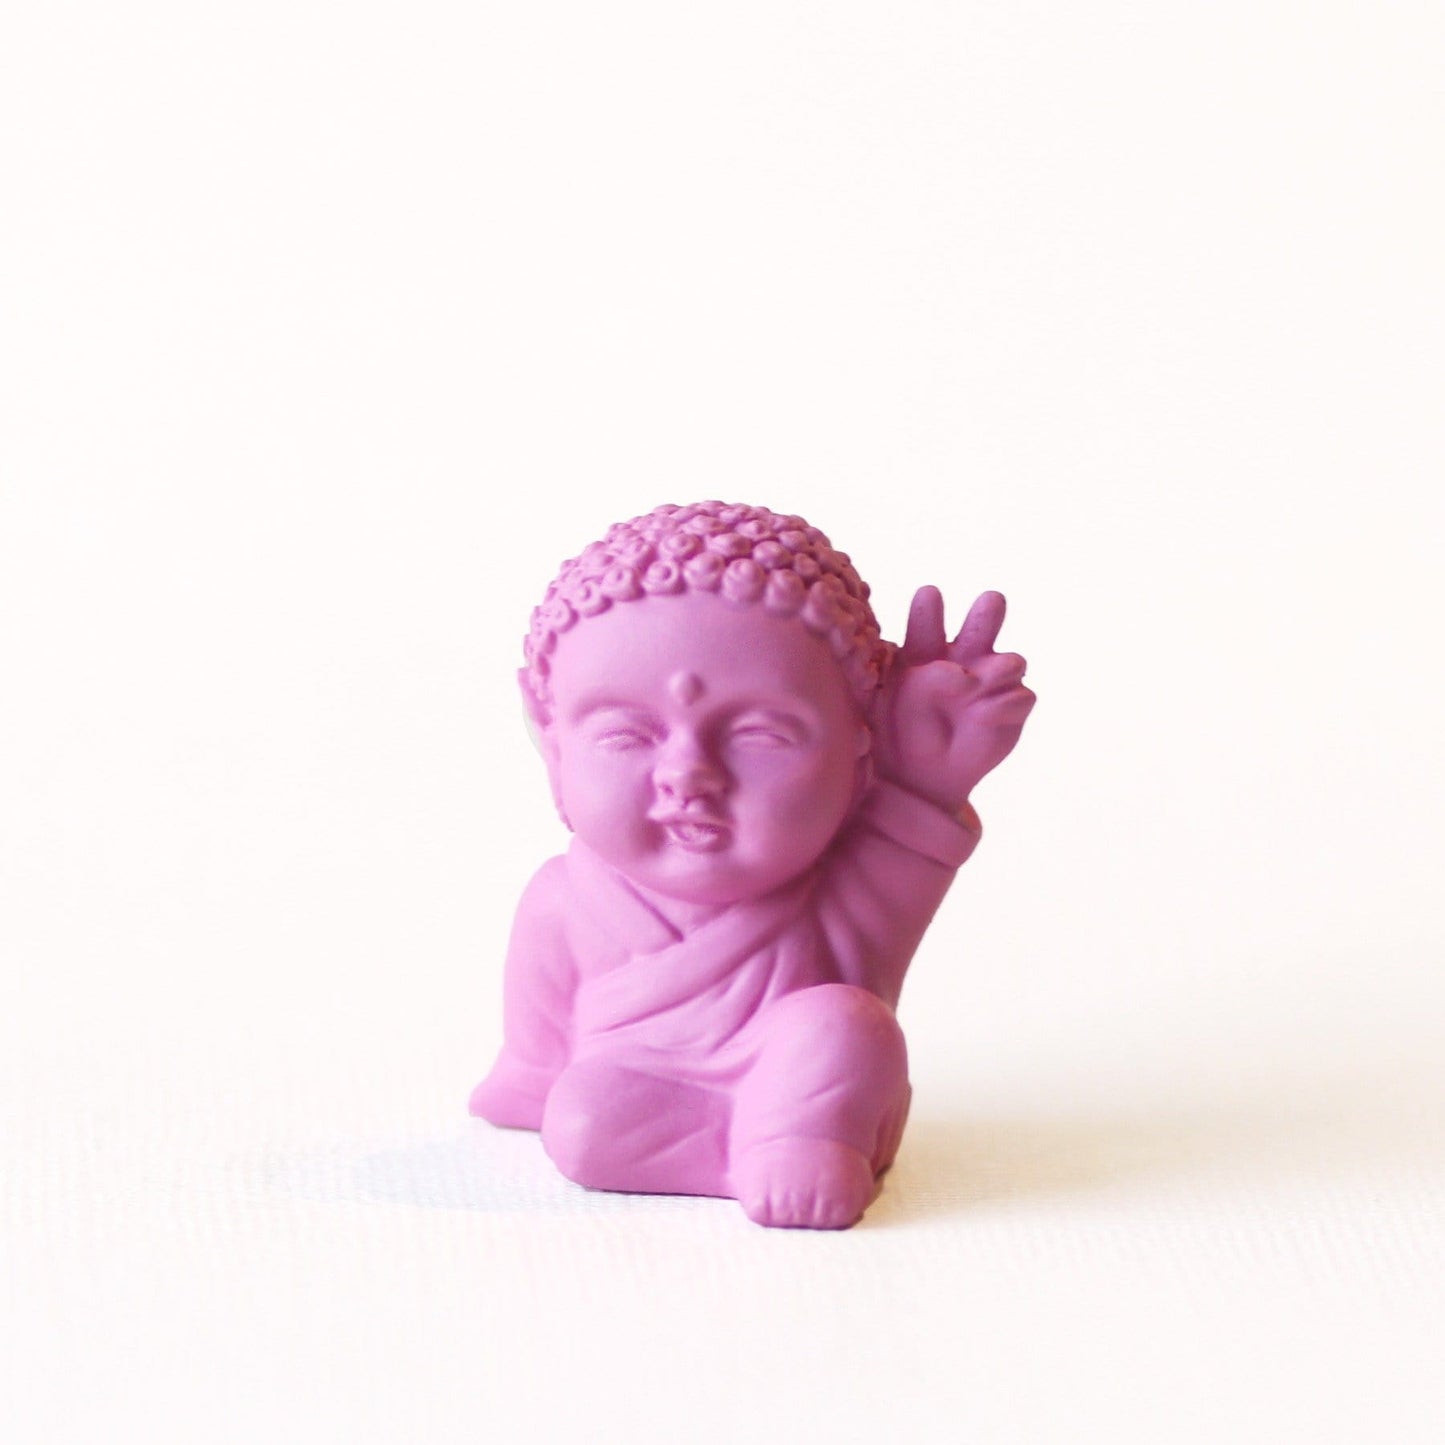 Fuchsia happy baby buddha statue